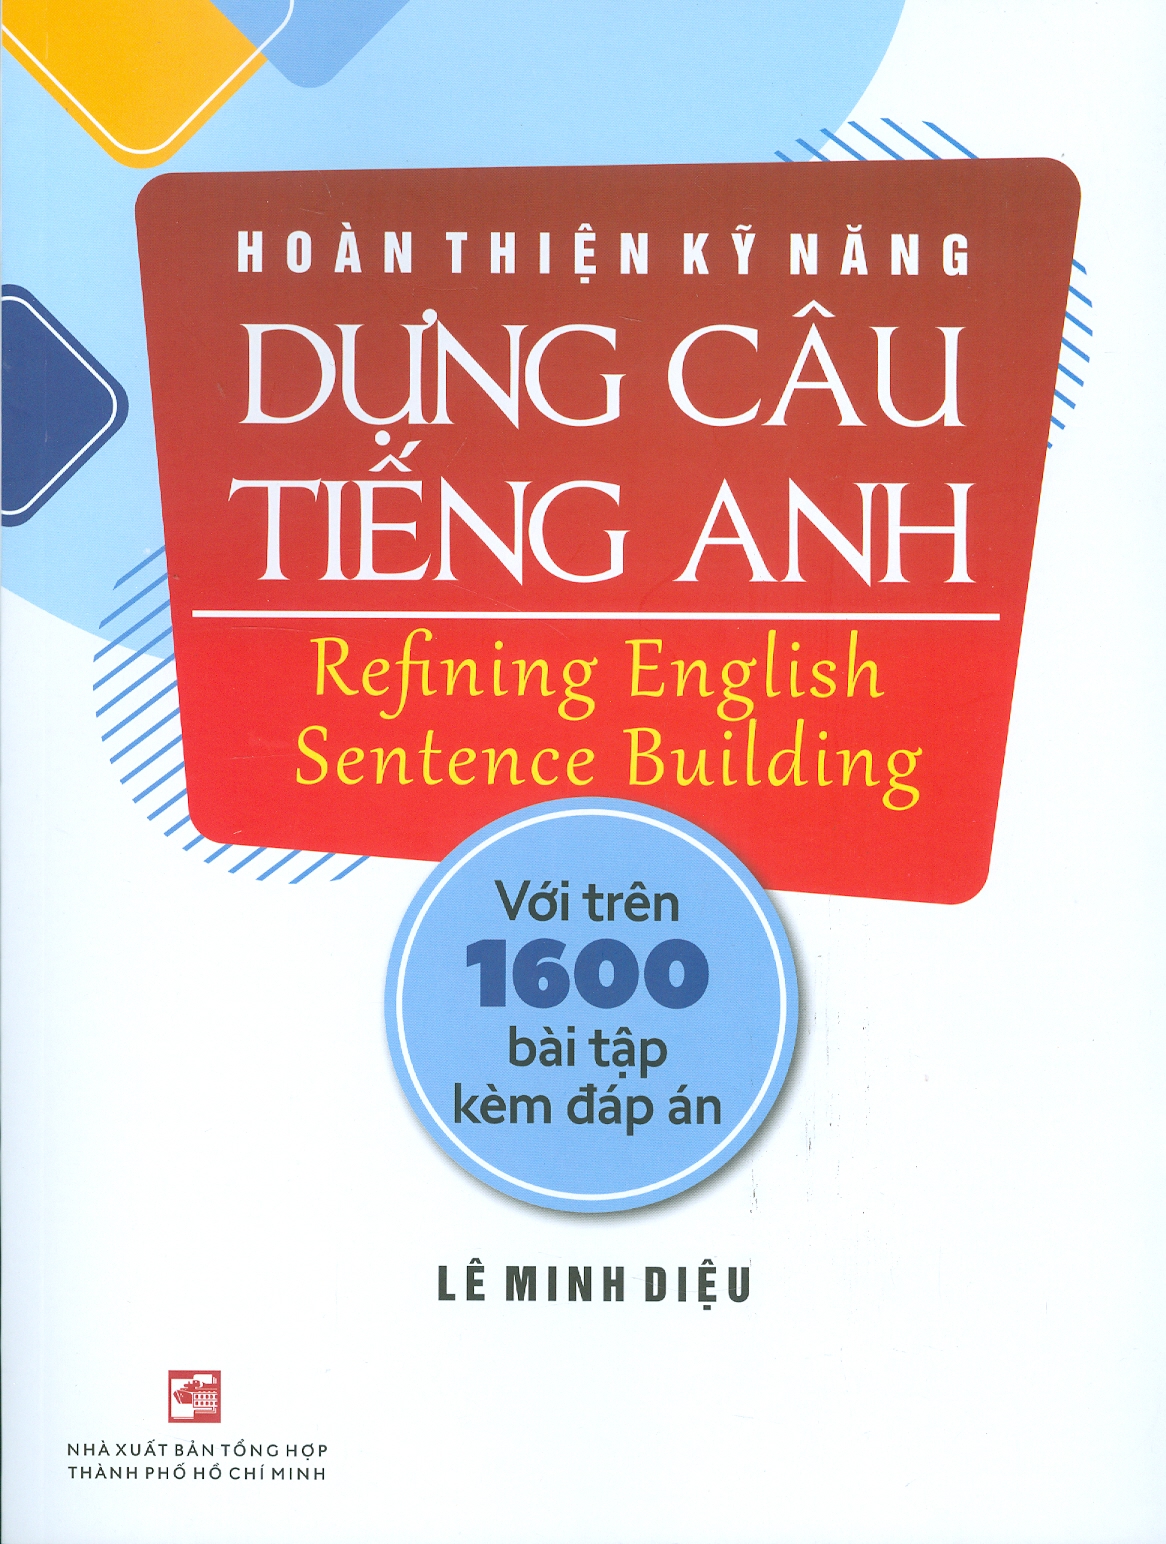 Hoàn Thiện Kỹ Năng Dựng Câu Tiếng Anh - Refining English Sentence Building